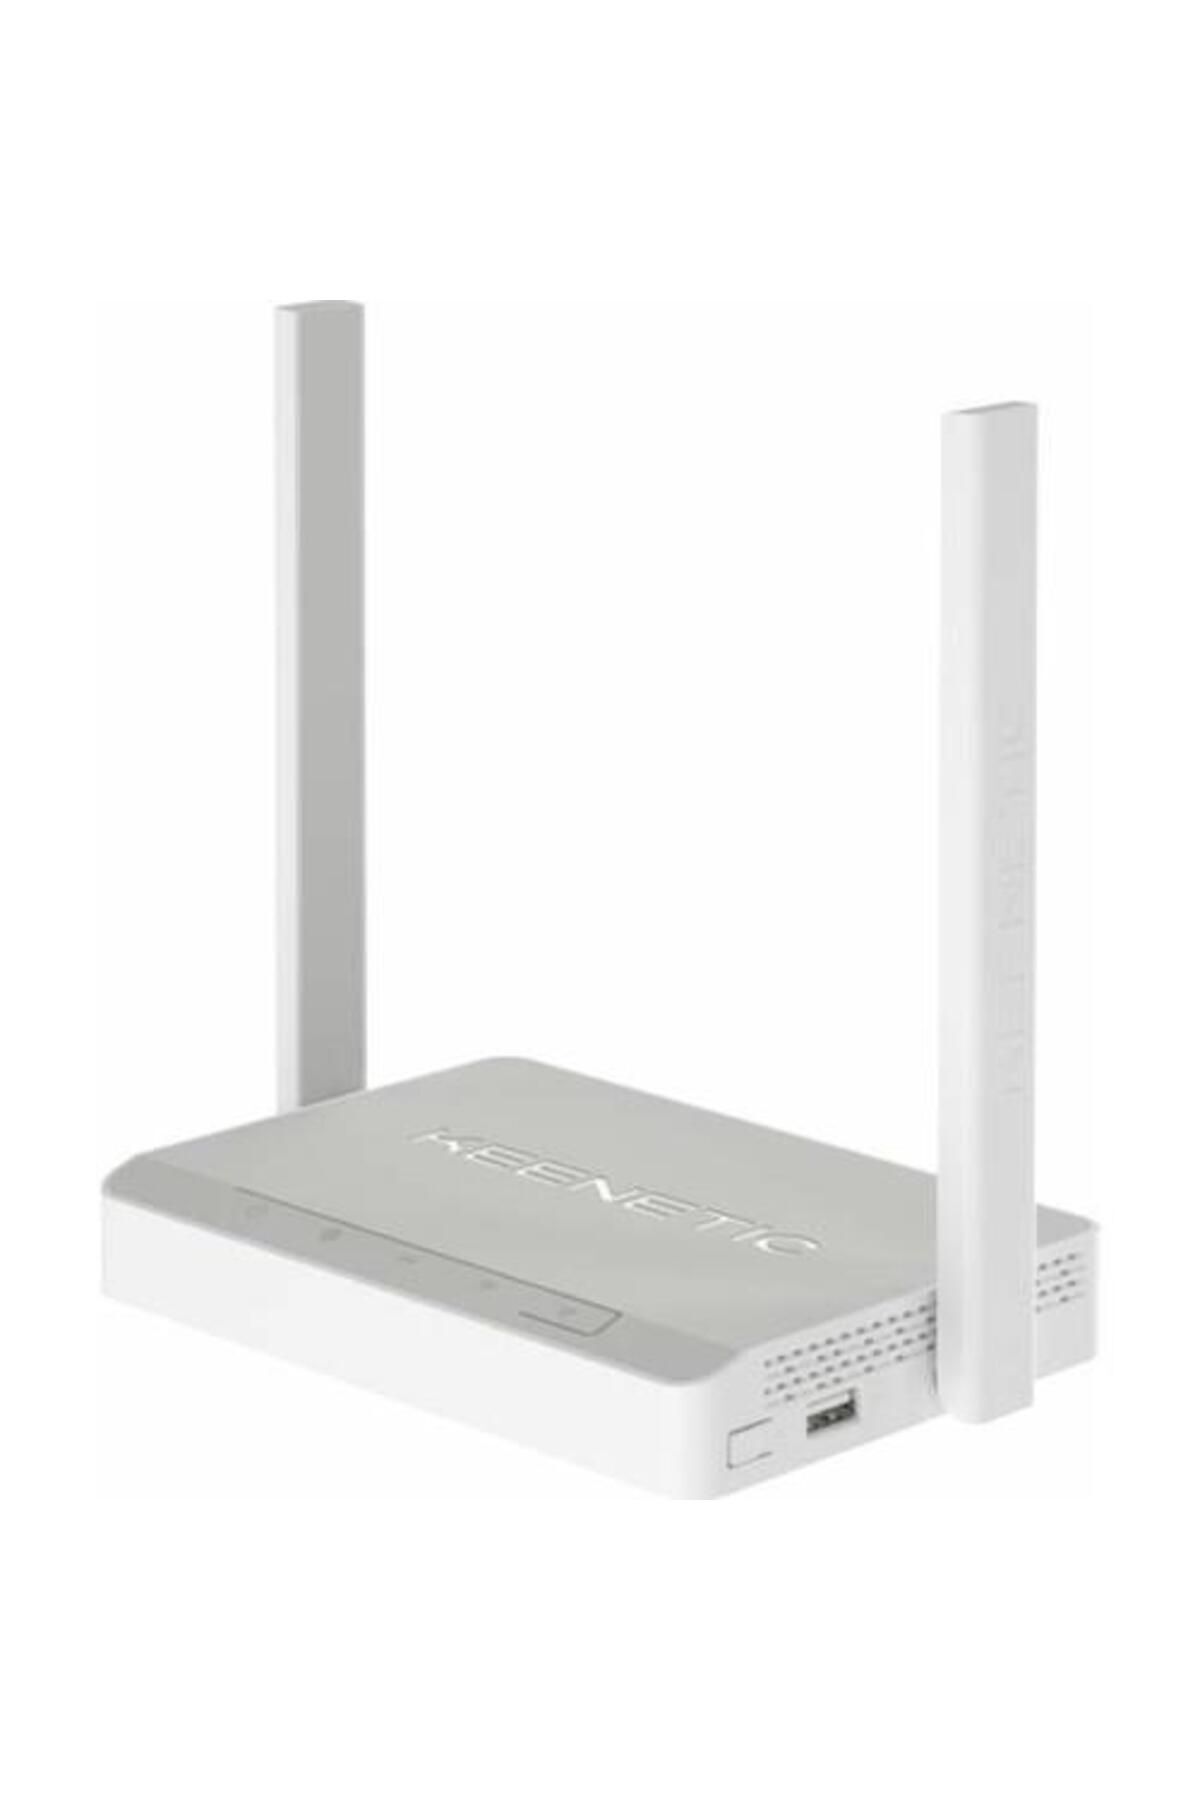 Keenetic Omni Dsl N300 Vdsl2/adsl2+ Fiber Mesh Wifi Modem Router Cloud Vpn Wpa3 Amplifier Usb 4xfe 2x5dbi